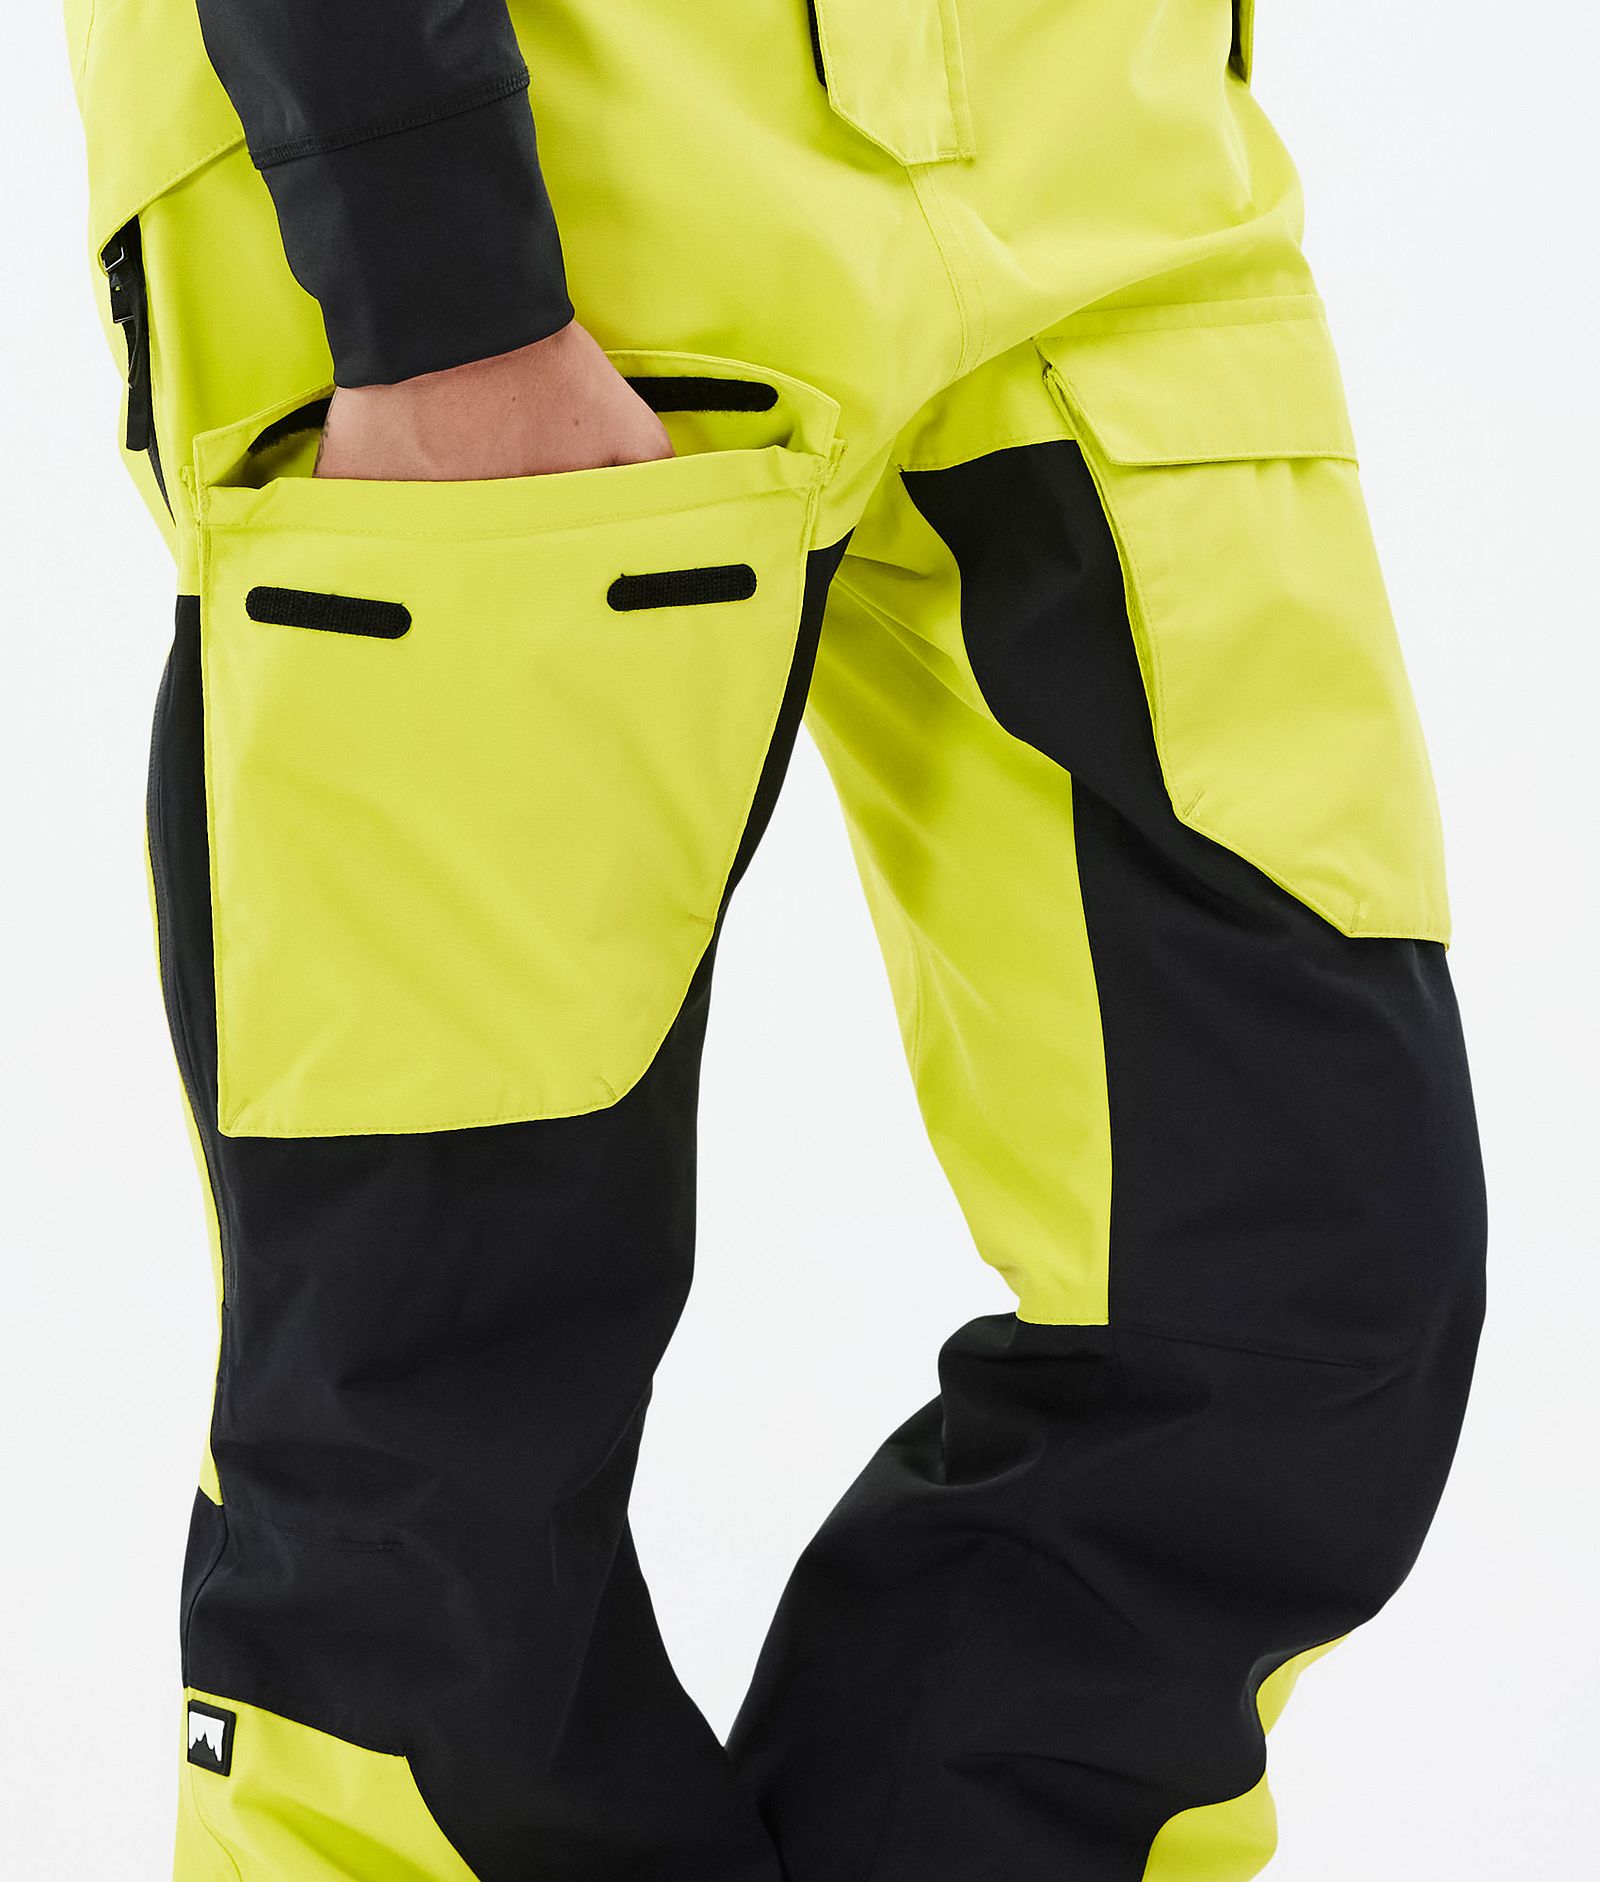 Montec Fawk W Pantalon de Ski Femme Bright Yellow/Black